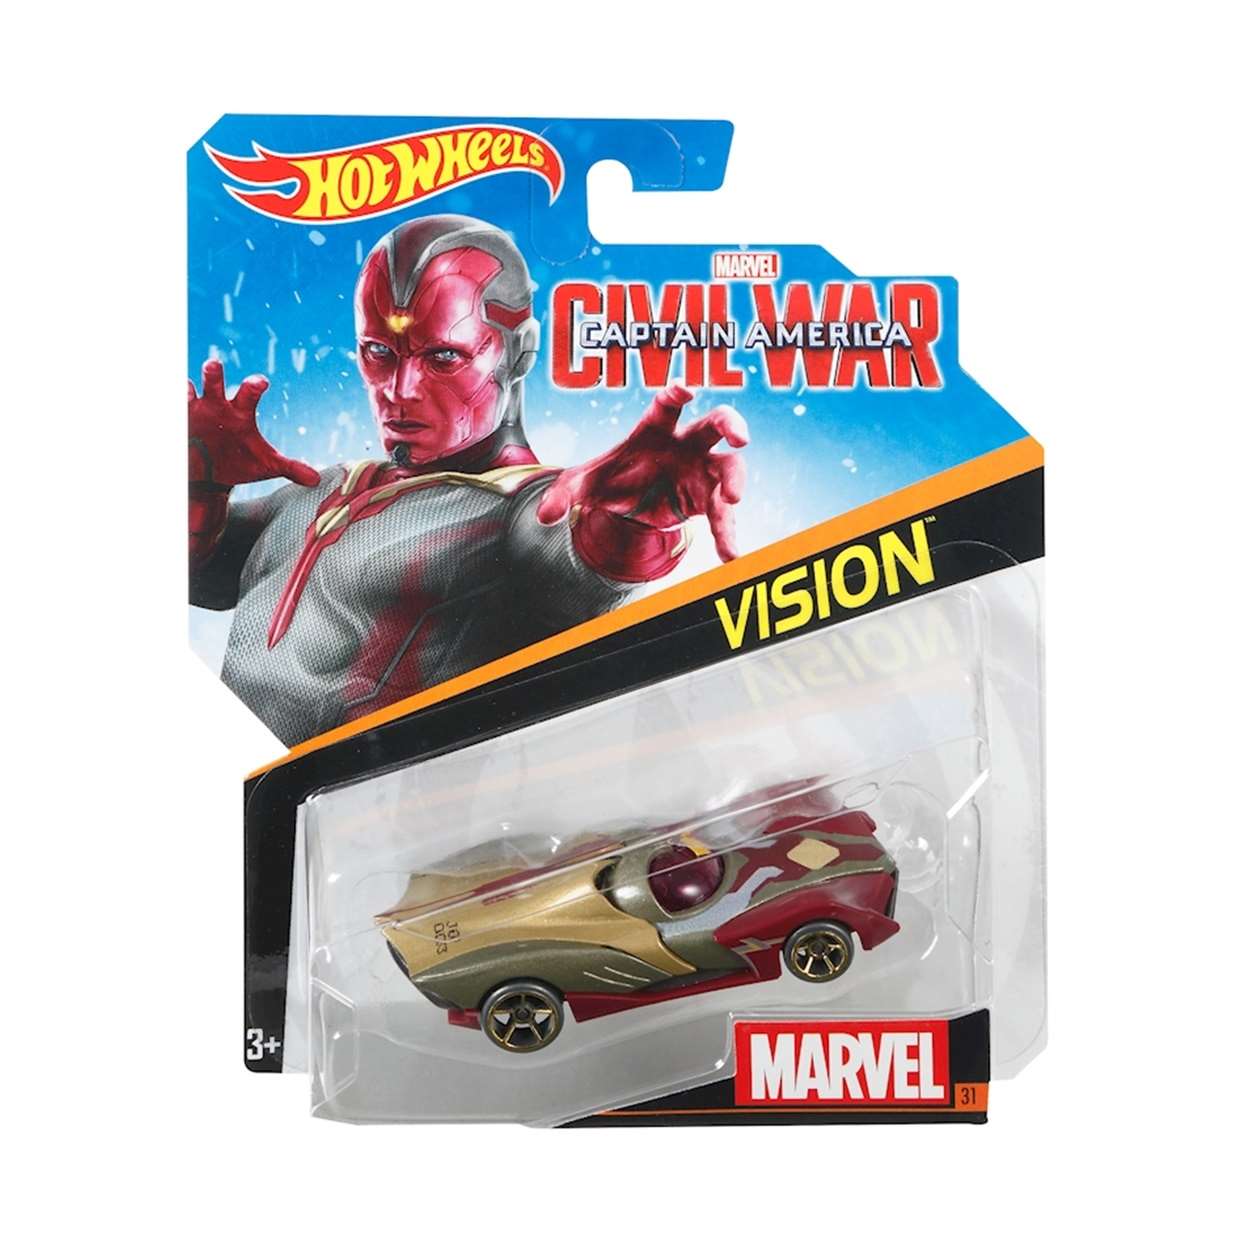 Pack Vision Capitán América Civil War + Vision #31 Hotwheels